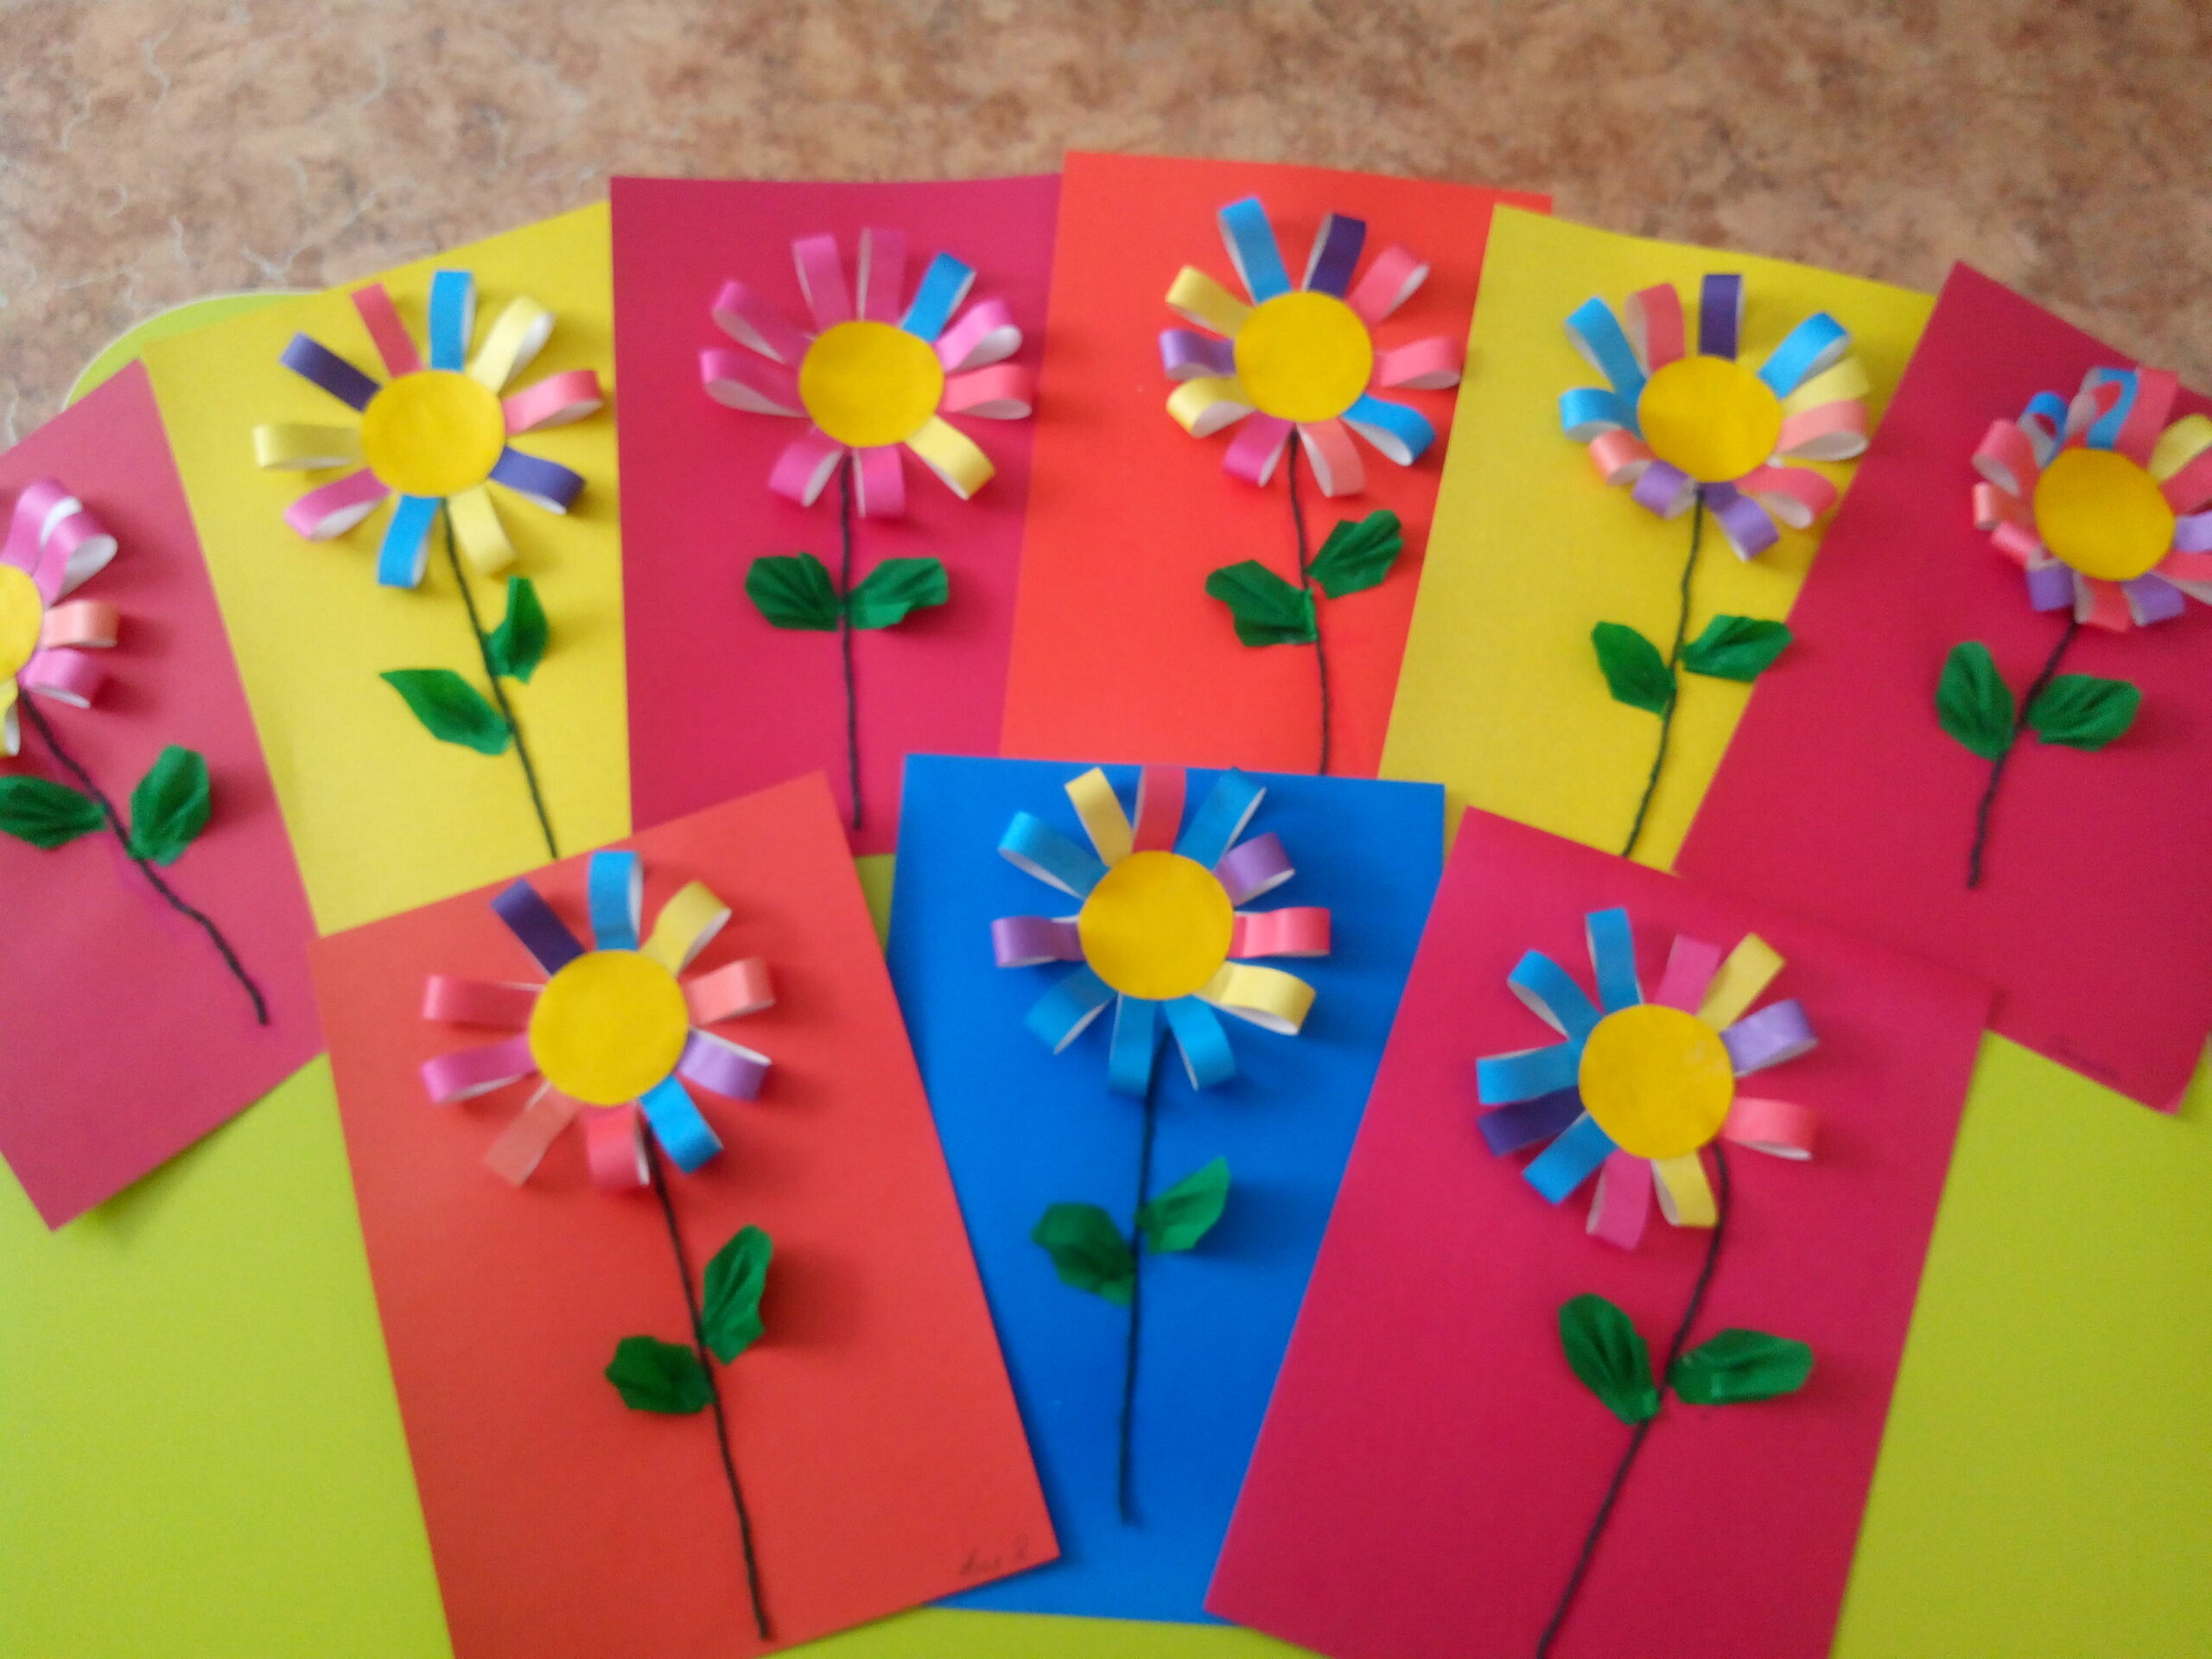 Нежная аппликация с цветами для учеников начальной школы